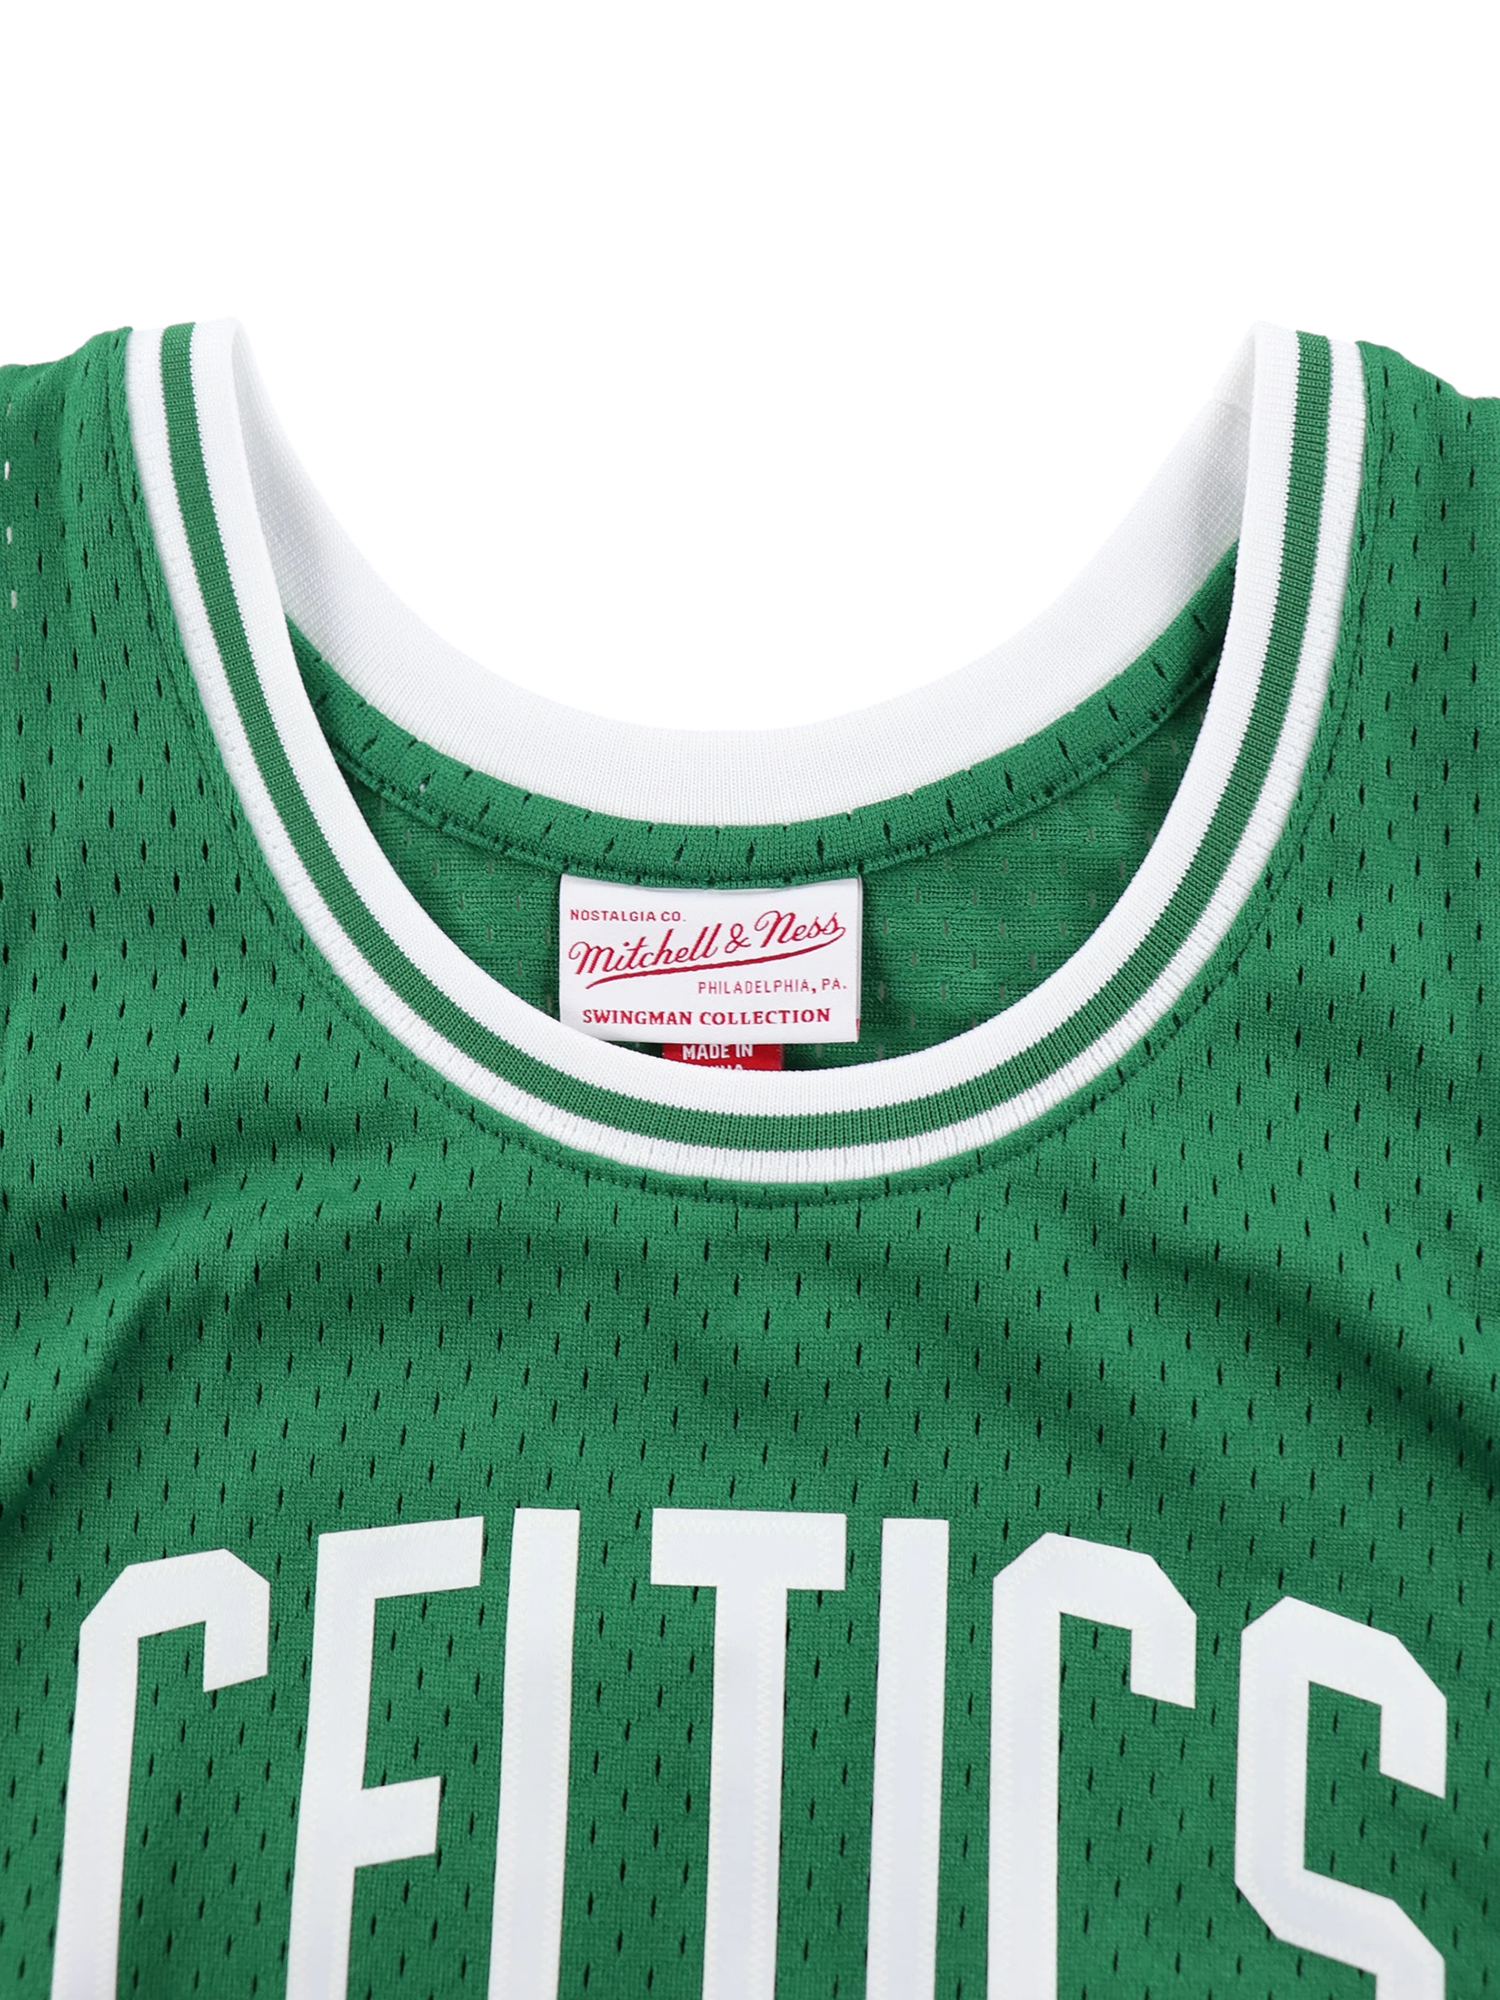 Boston Celtics ボストンセルティックス ラリーバード ユニフォーム 通販